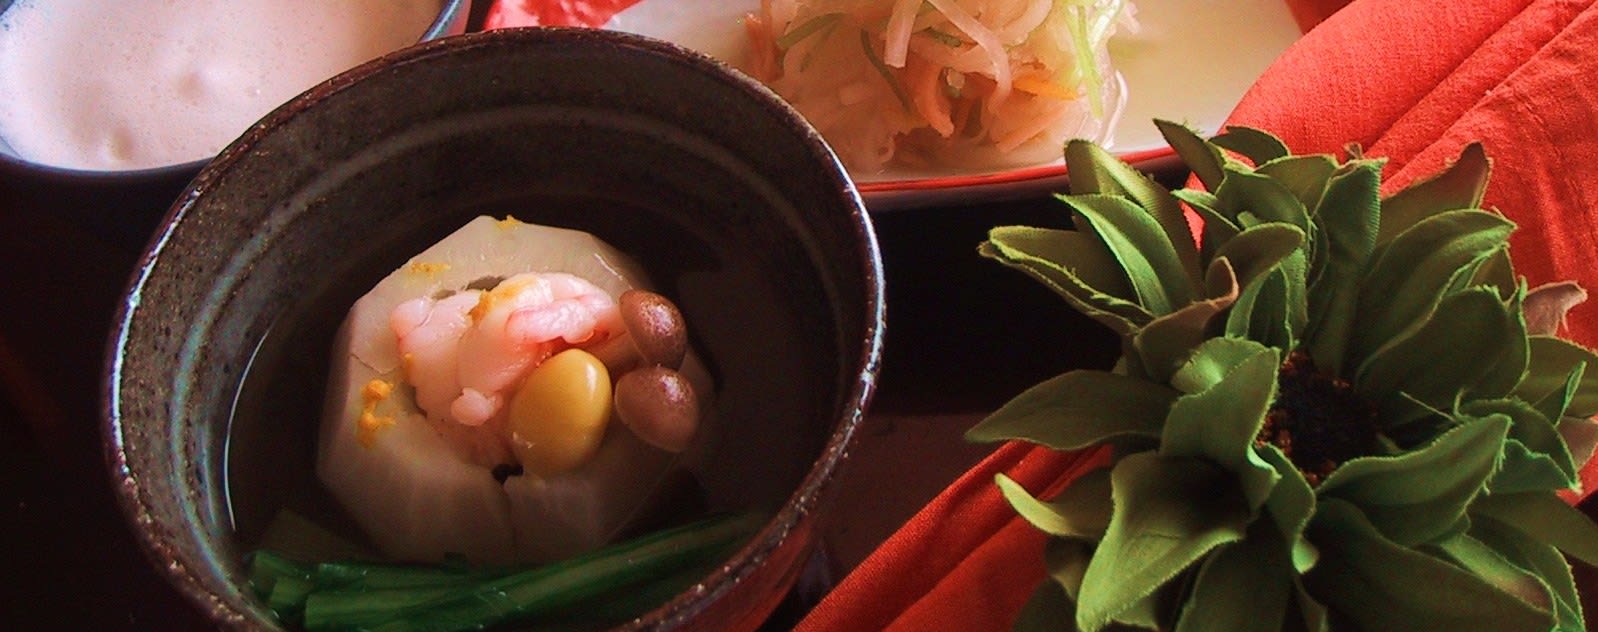 冬の和食 海老と小かぶの吉野煮 Cooking Studio Tanabe